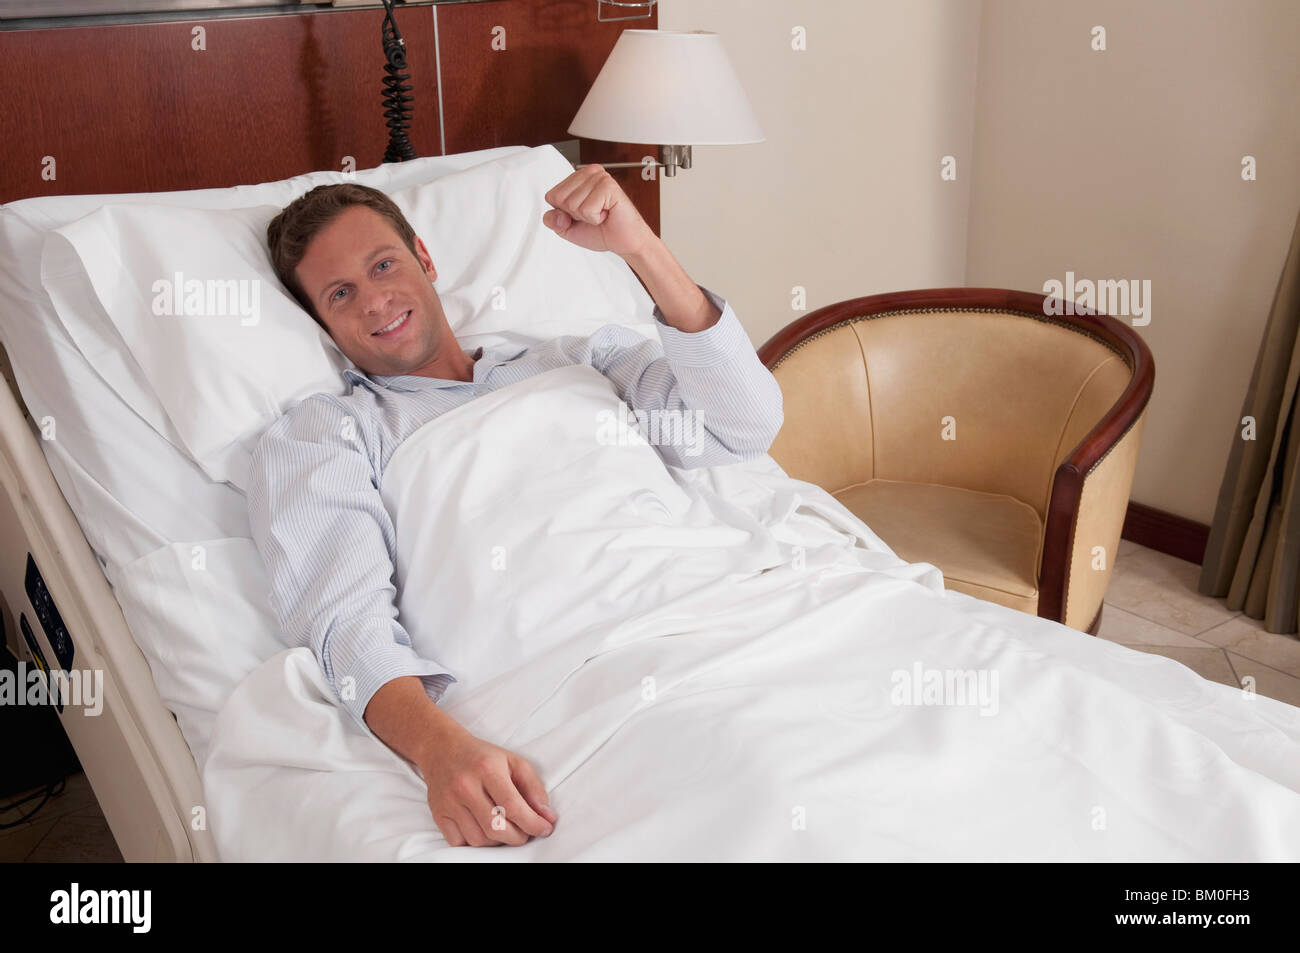 L'homme couché dans un lit d'hôpital Photo Stock - Alamy